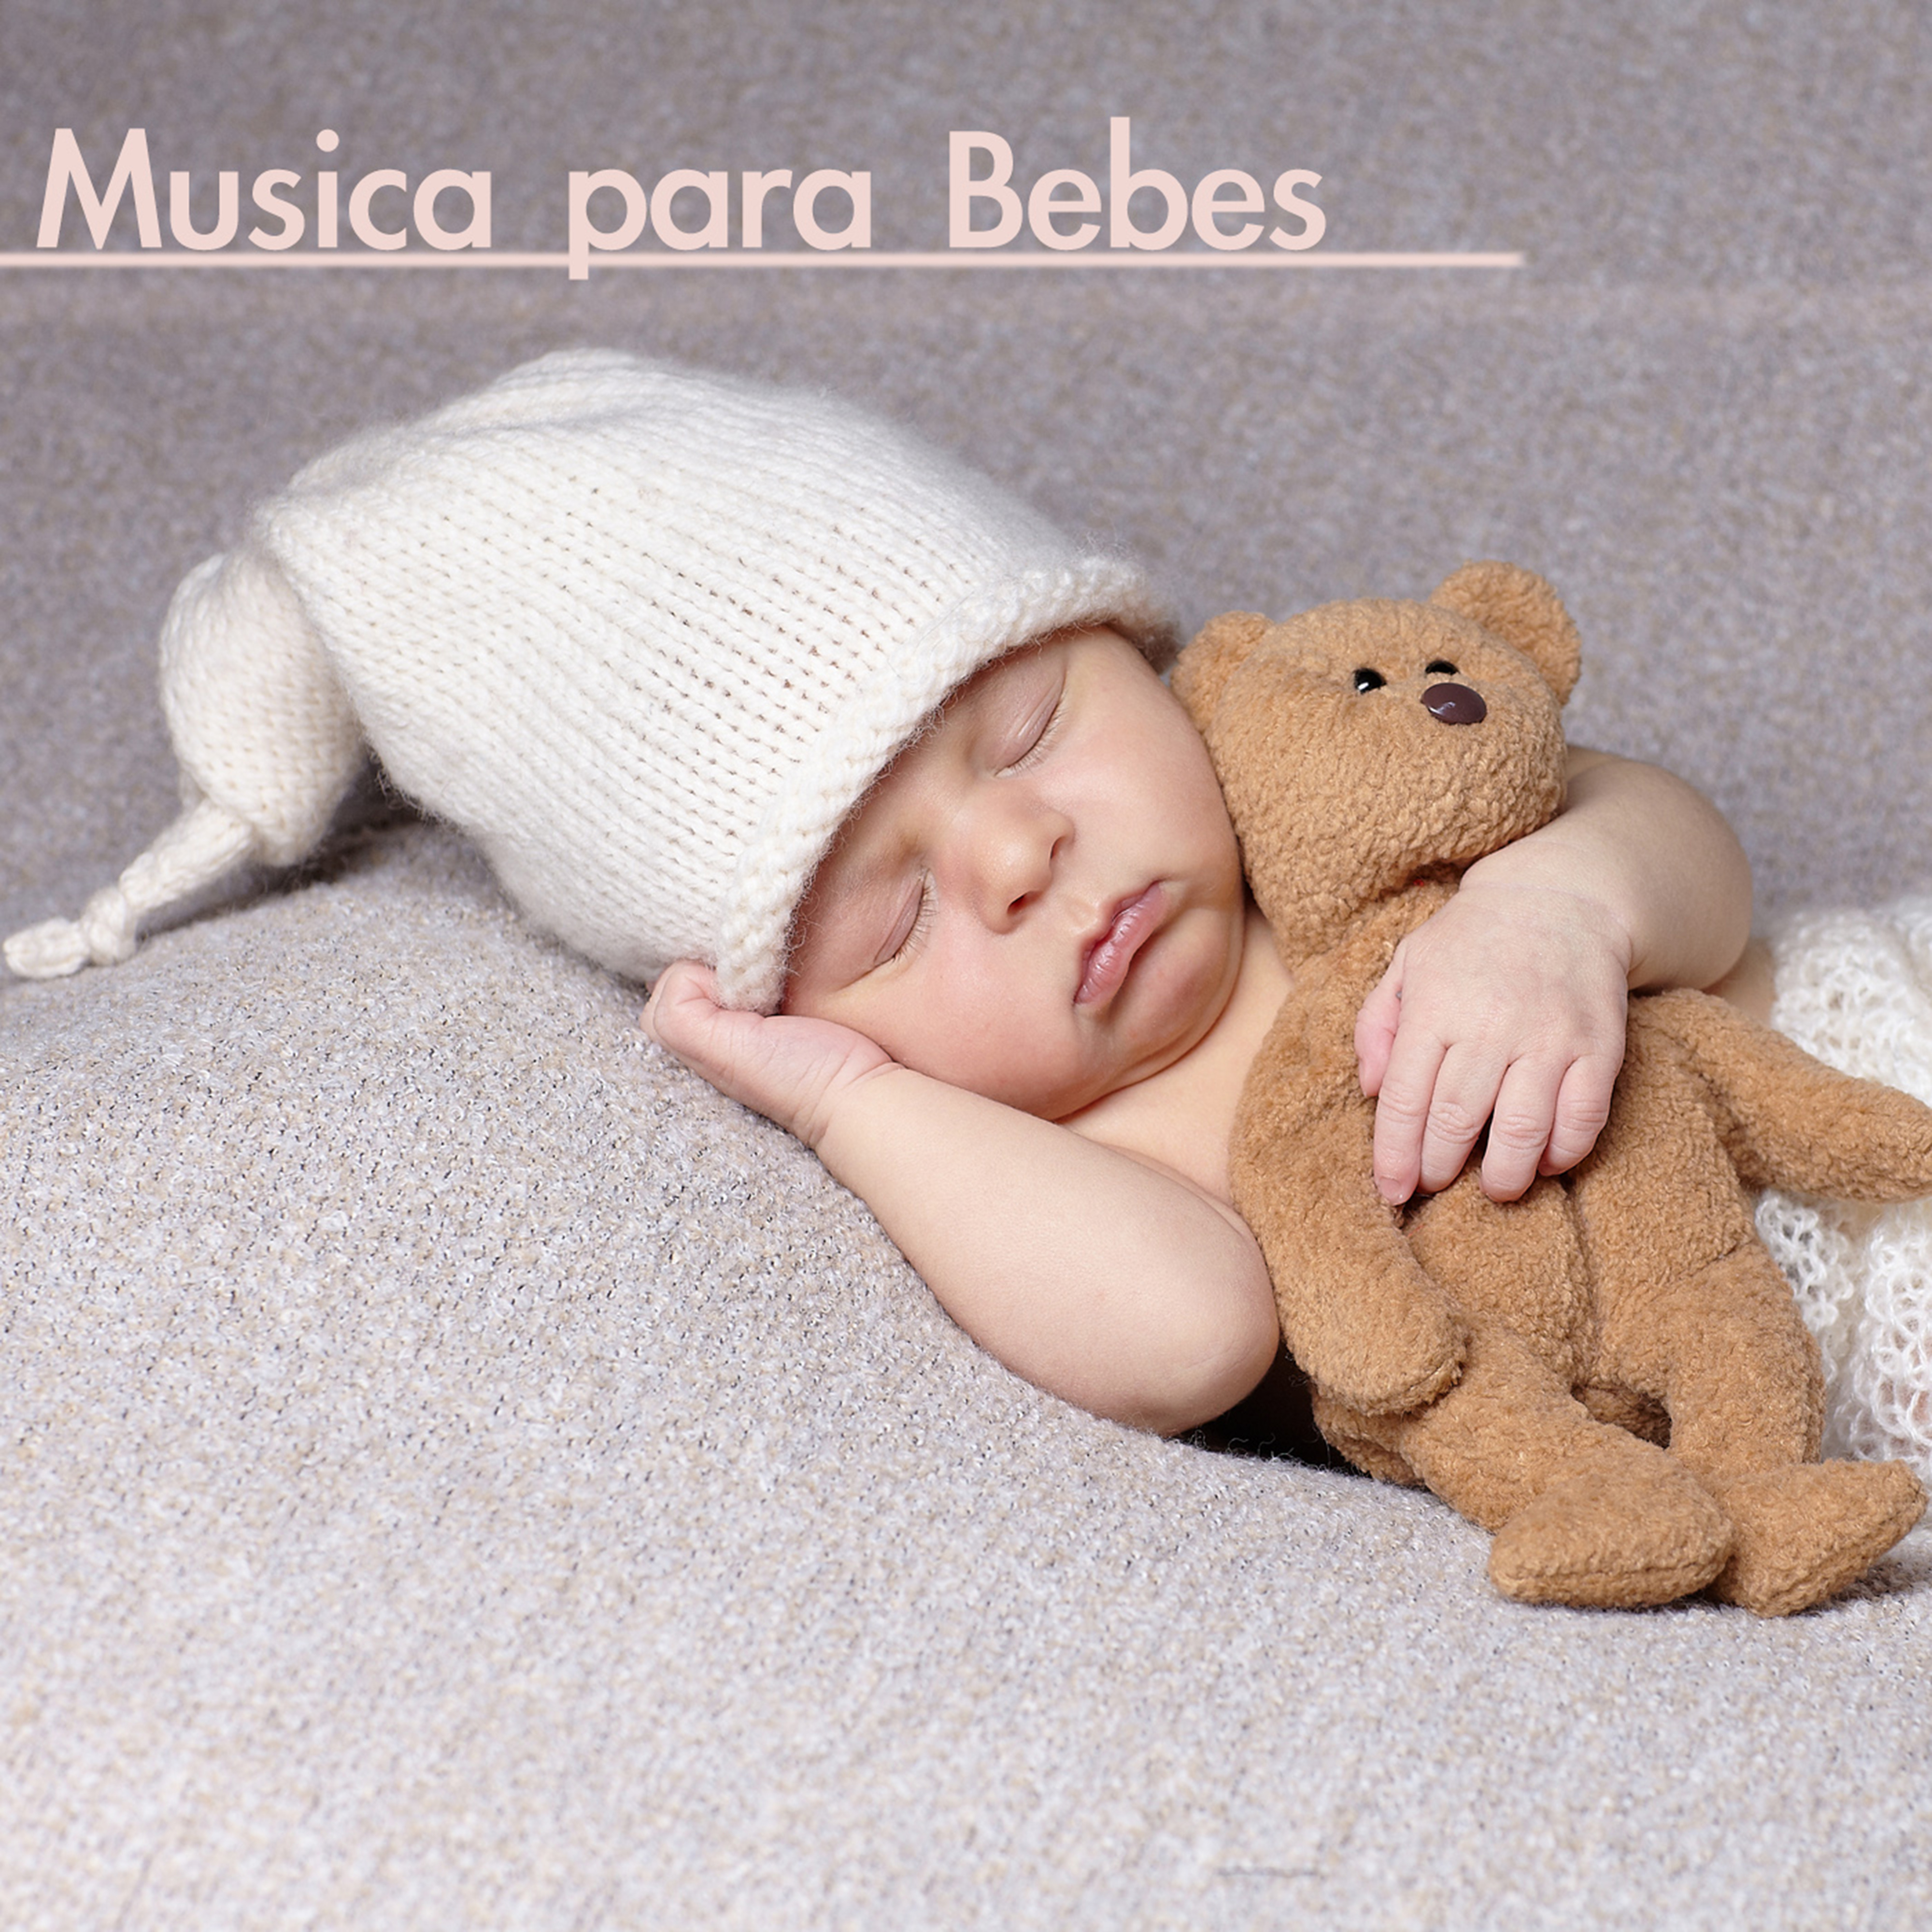 Musica para Bebes – Musica Relajante de Piano para Dormir y Relajar a tus Niños